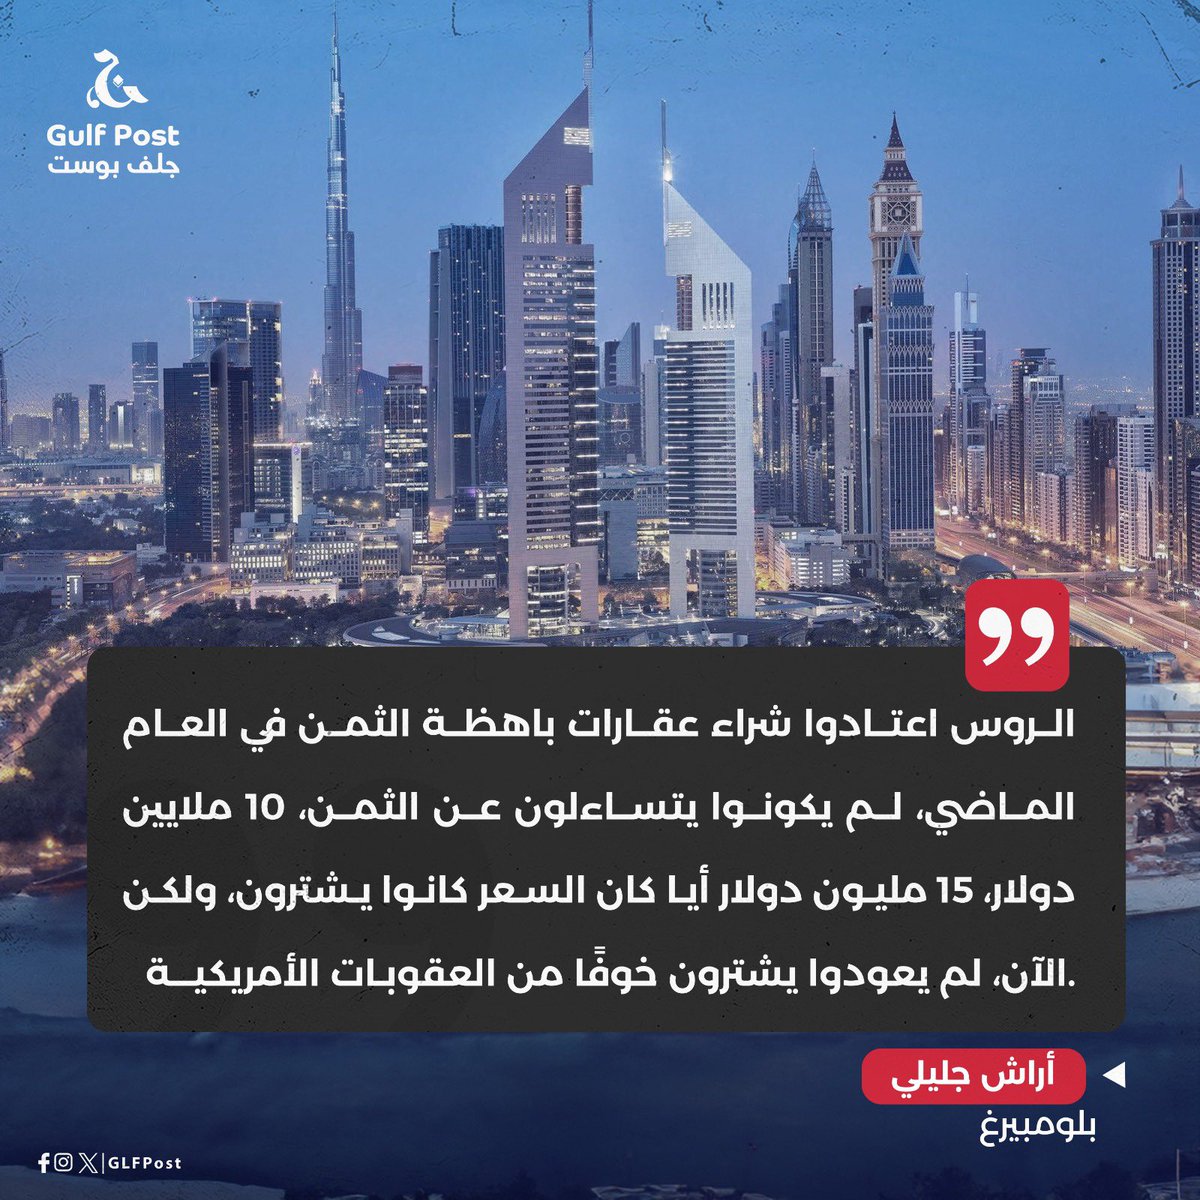 الروس كانوا أكبر مشتر أجنبي للعقارات السكنية في #دبي حتى عام 2022، إذ كانت الإمارة الخليجية تمثل ملاذًا لهم ومركزًا لغسيل الأموال والهروب من العقوبات الغربية